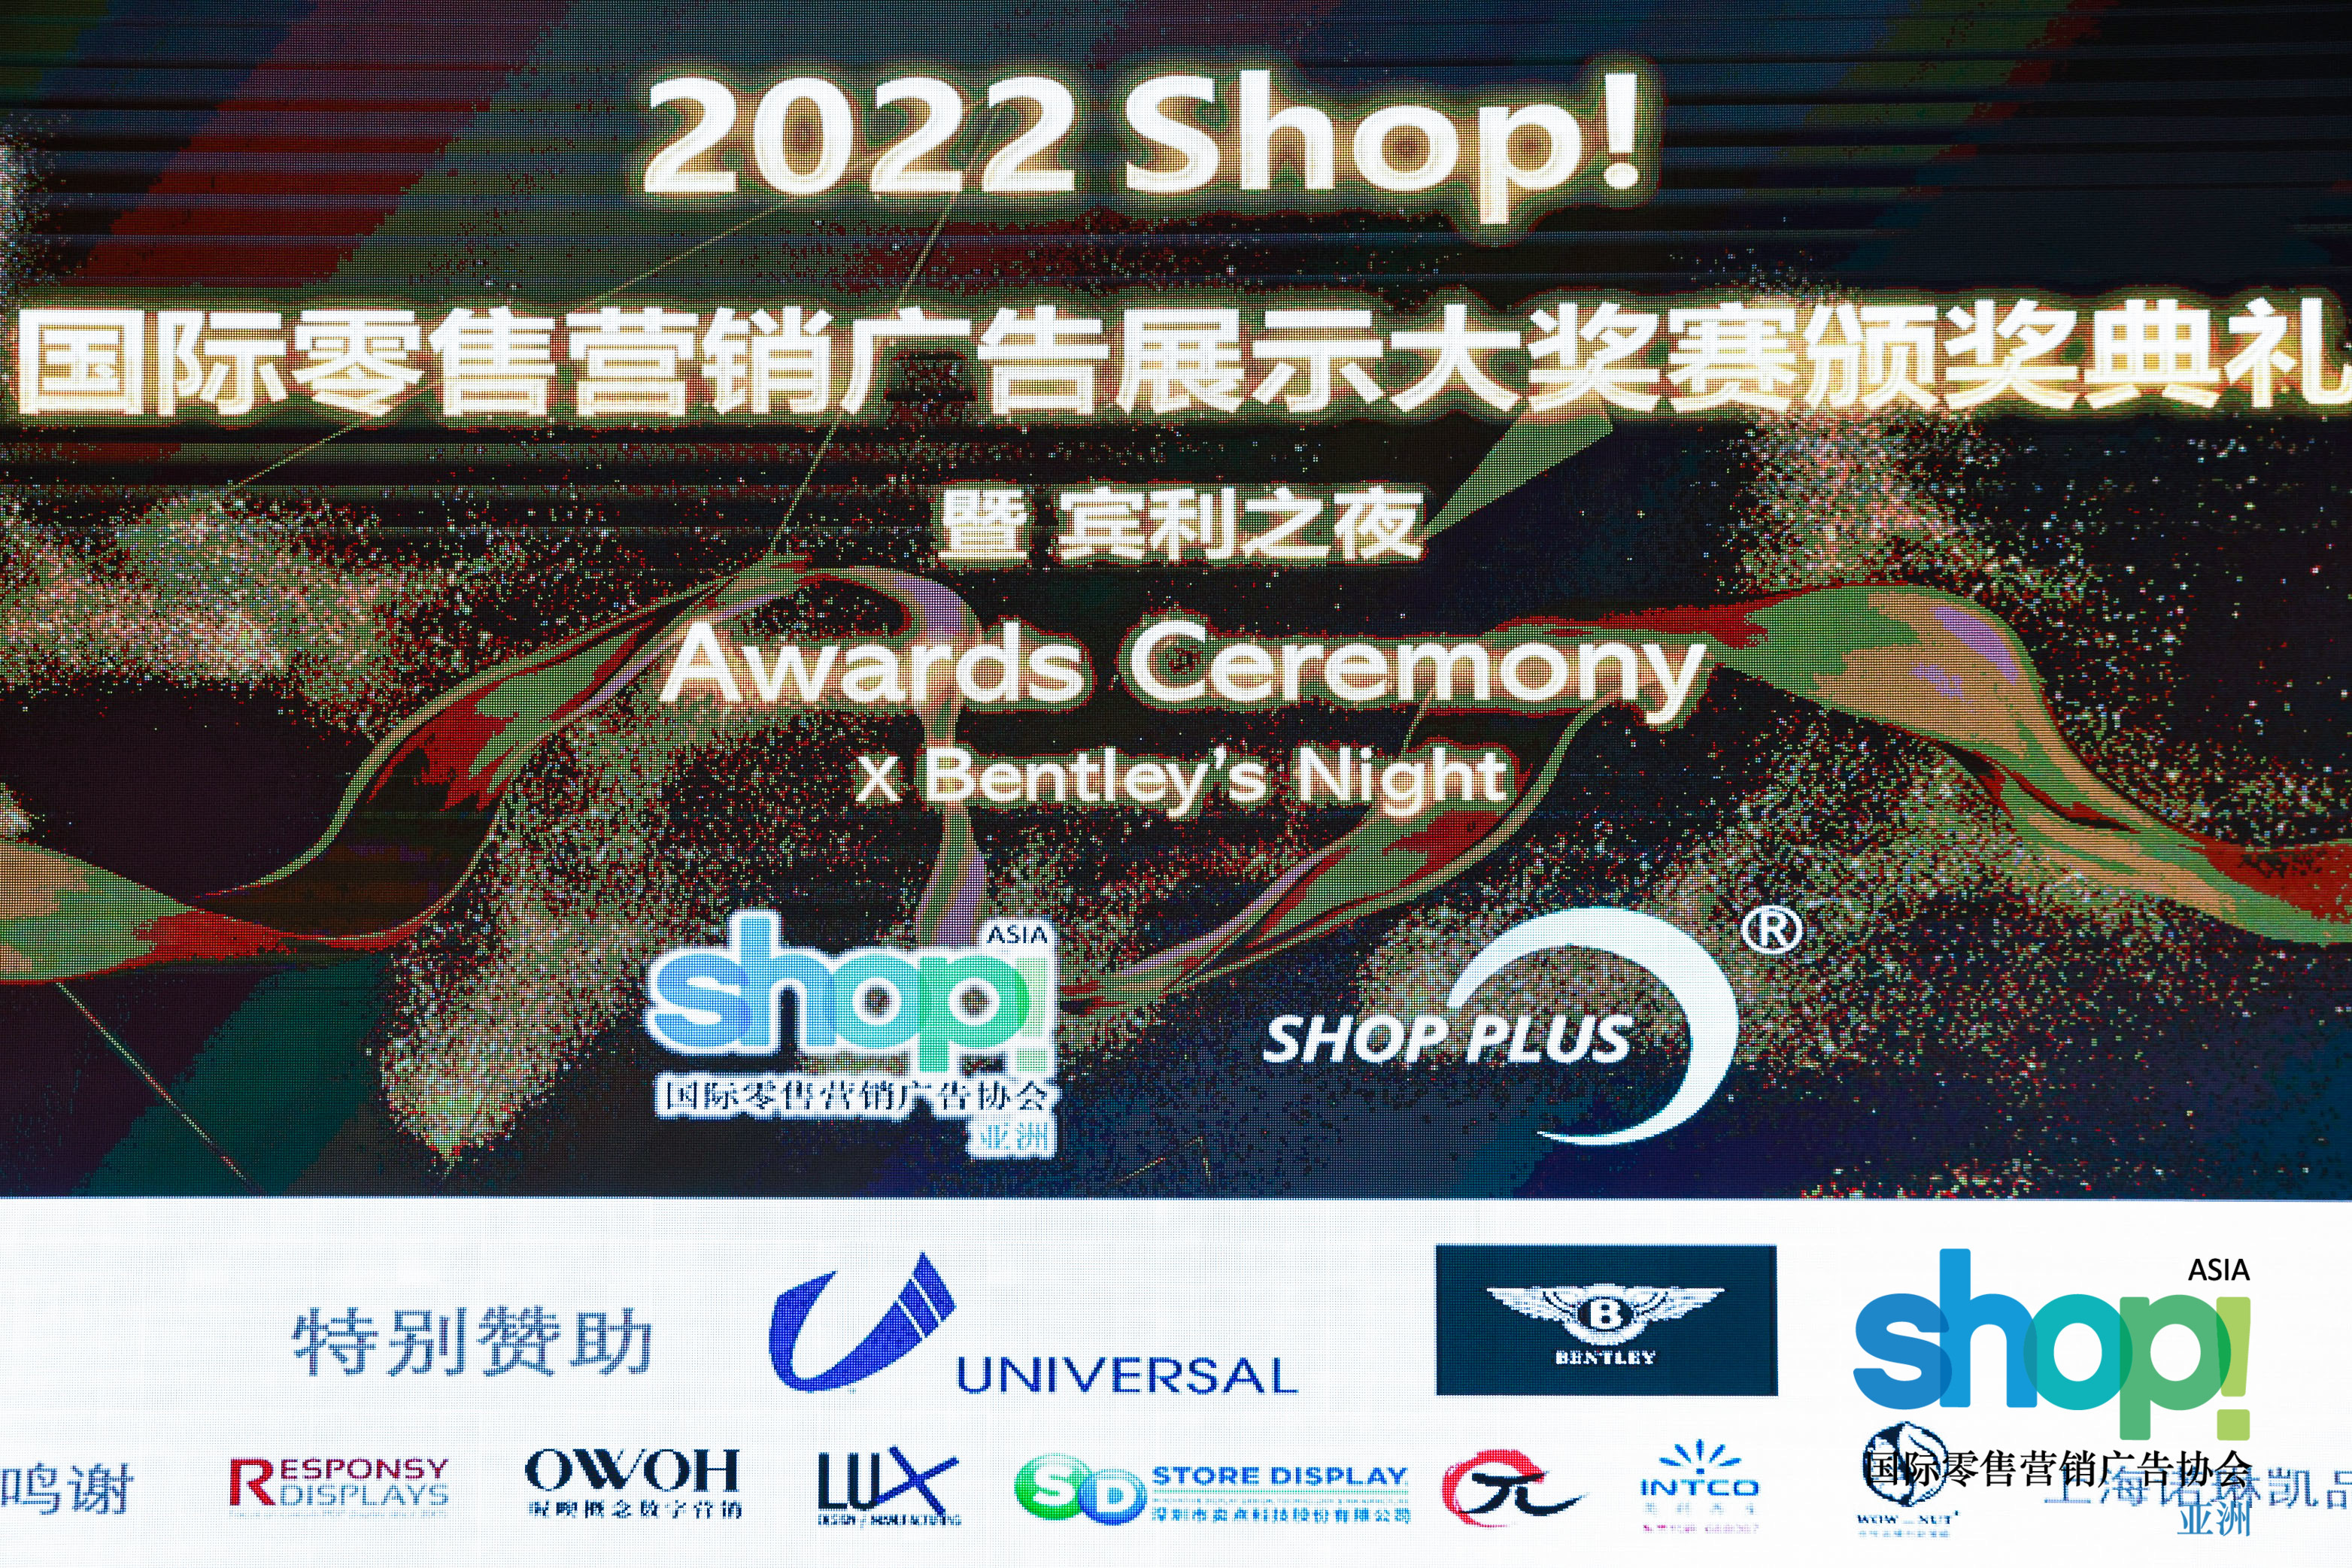 2022年Shop!国际零售营销广告展示大奖赛颁奖典礼暨宾利之夜